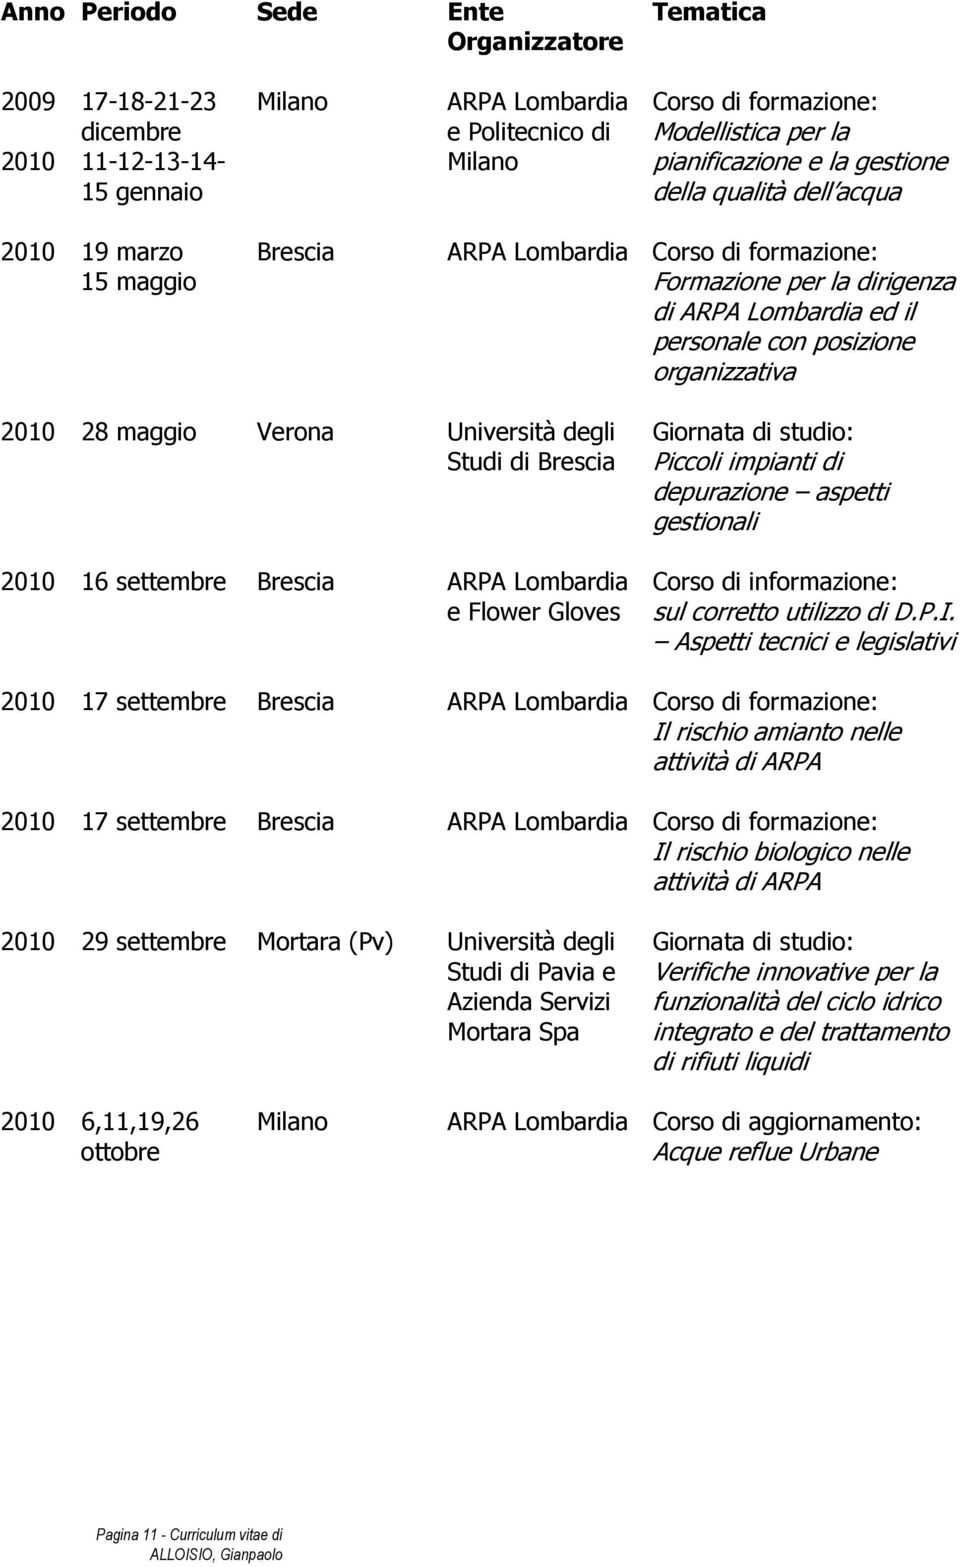 2010 16 settembre Brescia ARPA Lombardia e Flower Gloves Piccoli impianti di depurazione aspetti gestionali Corso di informazione: sul corretto utilizzo di D.P.I.